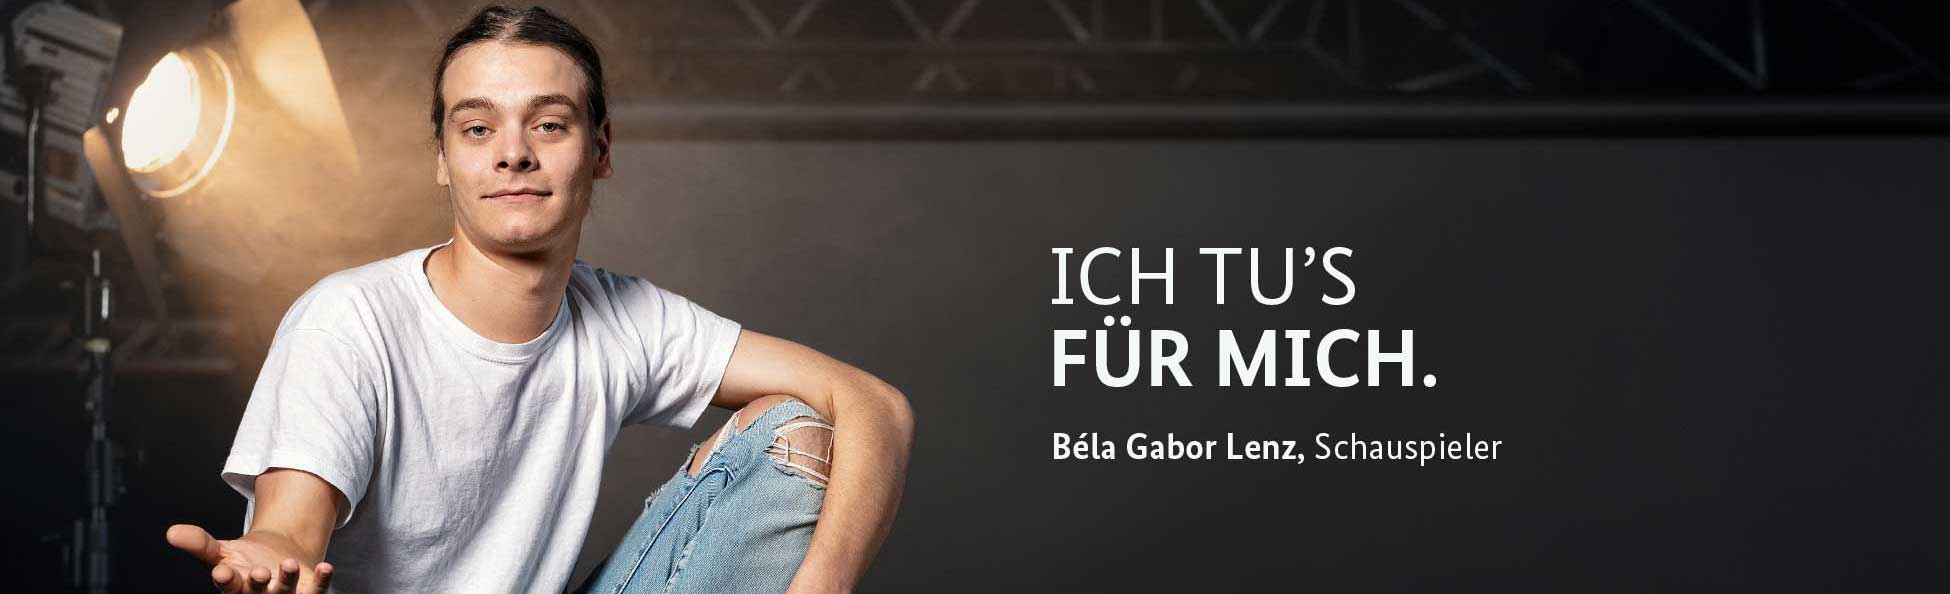 Der Schauspieler Béla Gabor Lenz mit einem Slogan der Impfmotivationskampagne "ICH TU'S FÜR"